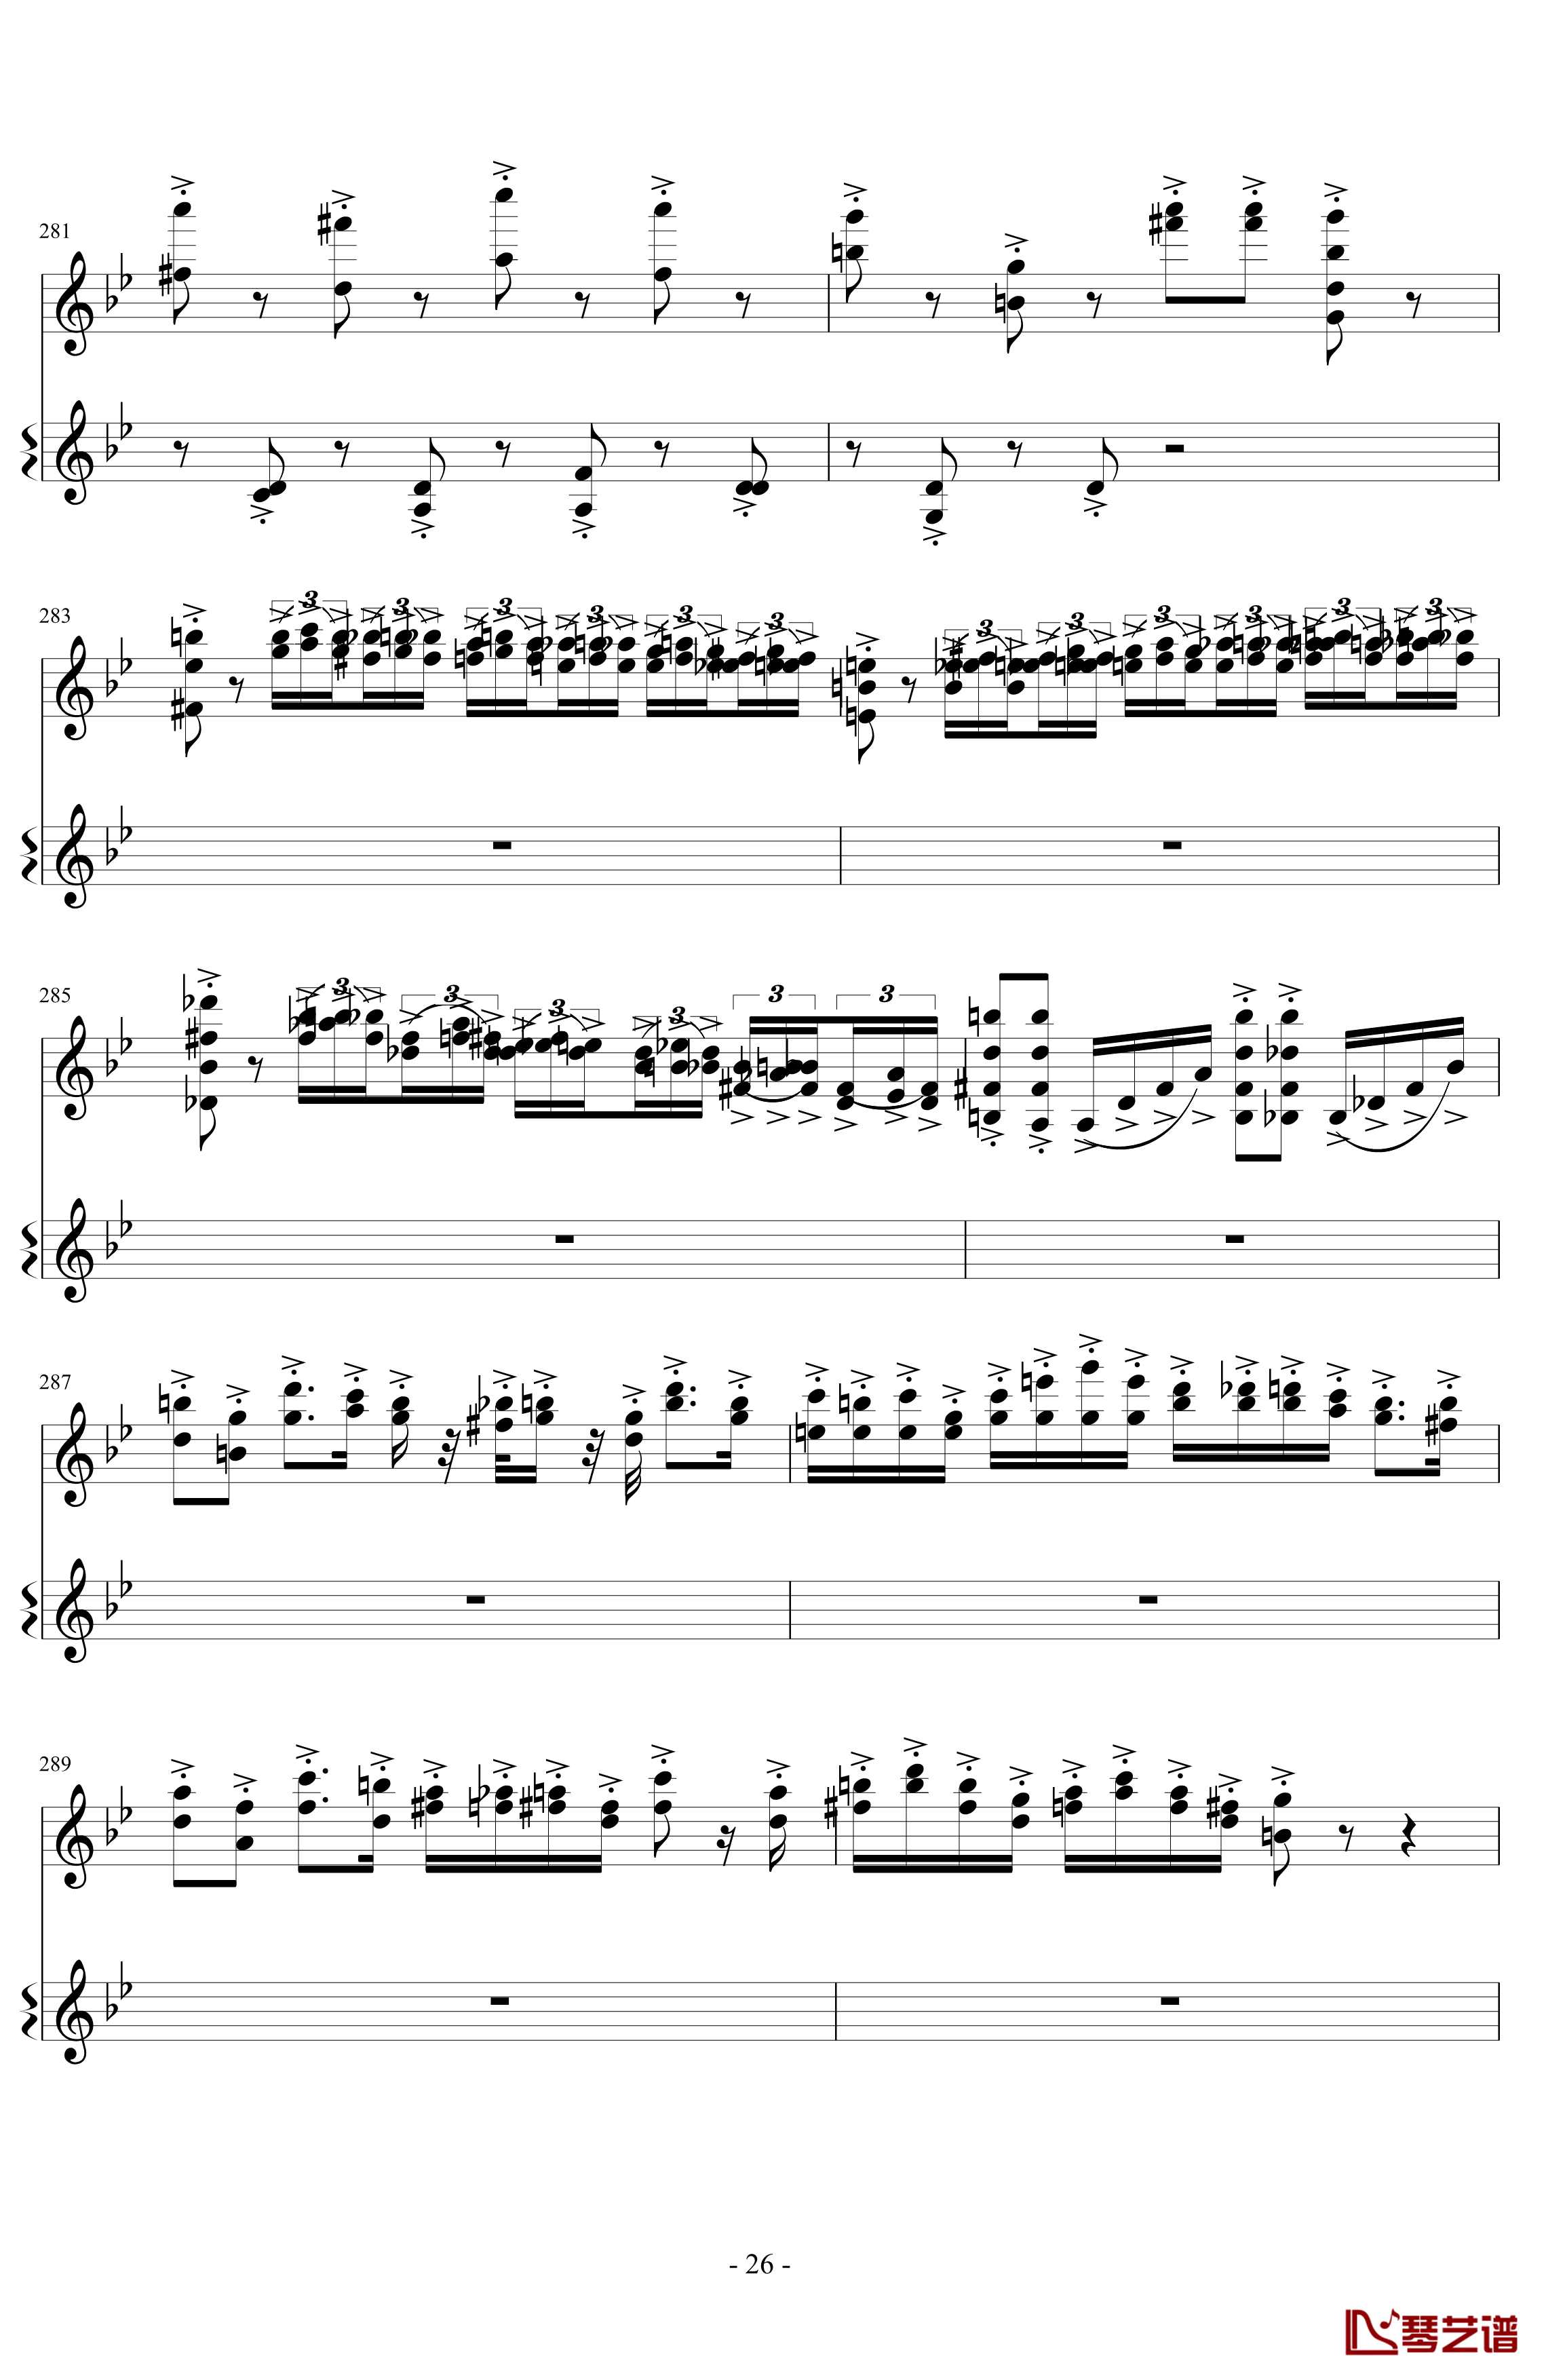 意大利国歌变奏曲钢琴谱-DXF26